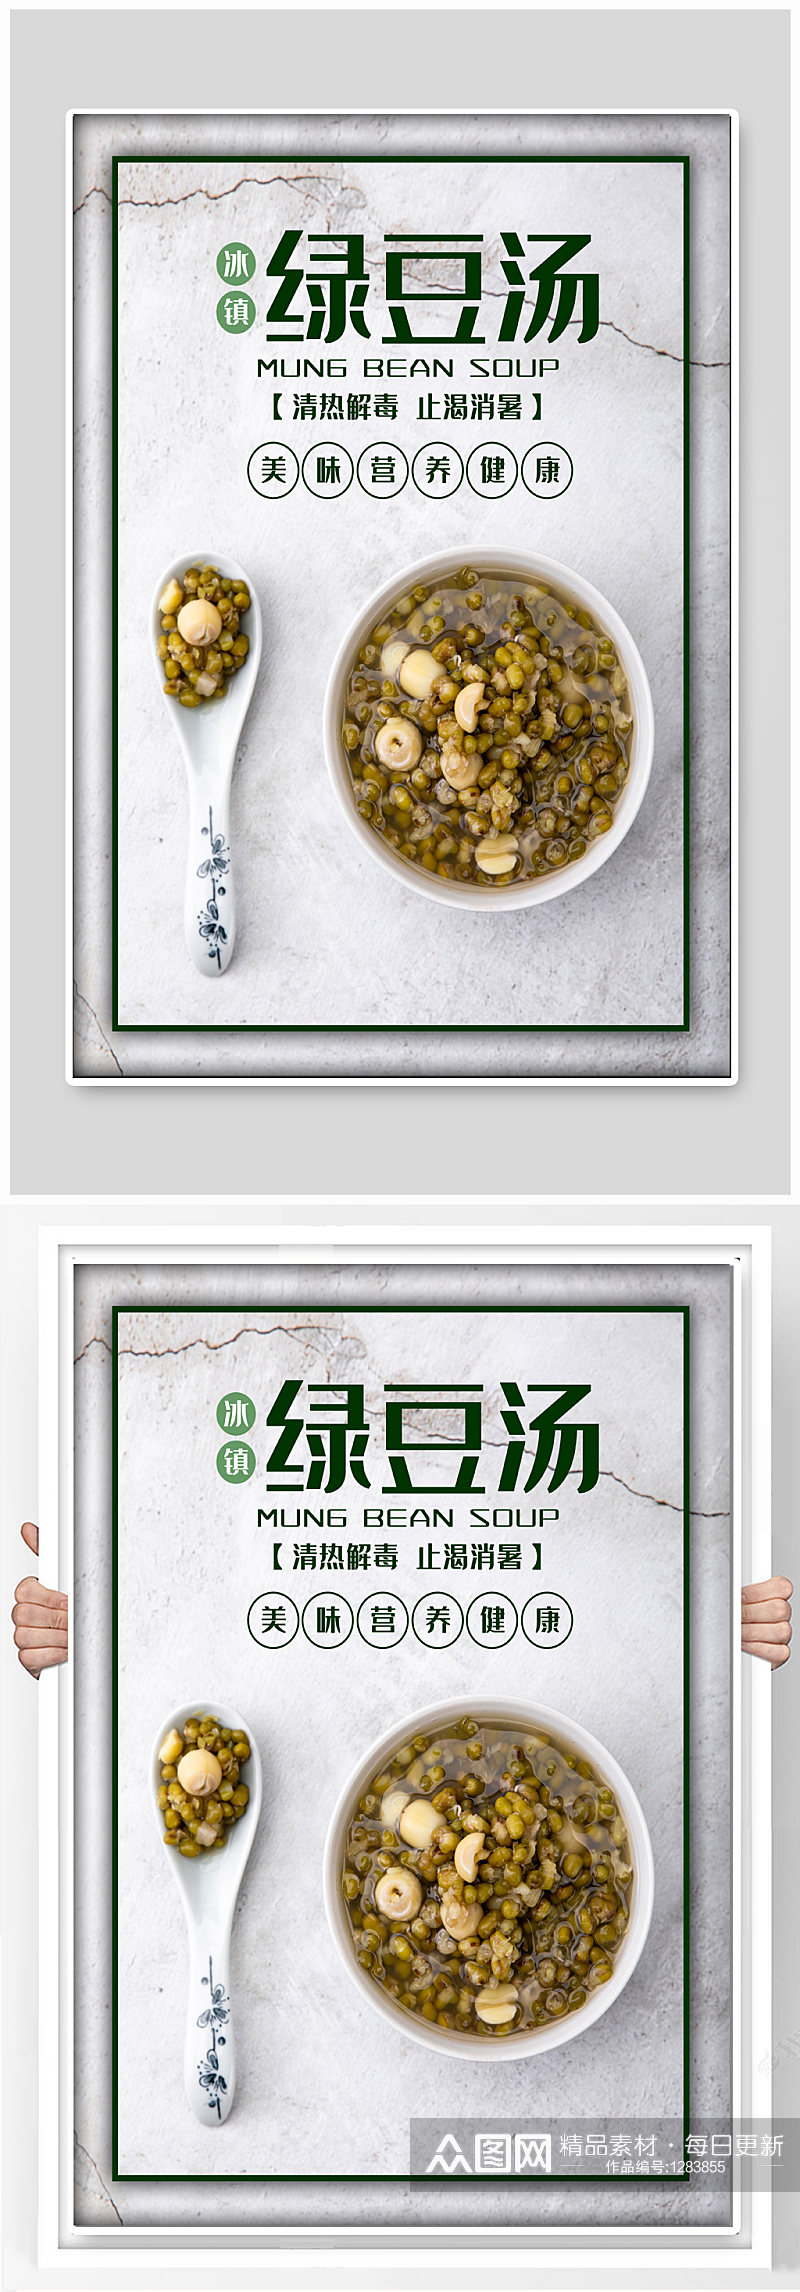 绿豆汤美食宣传海报素材